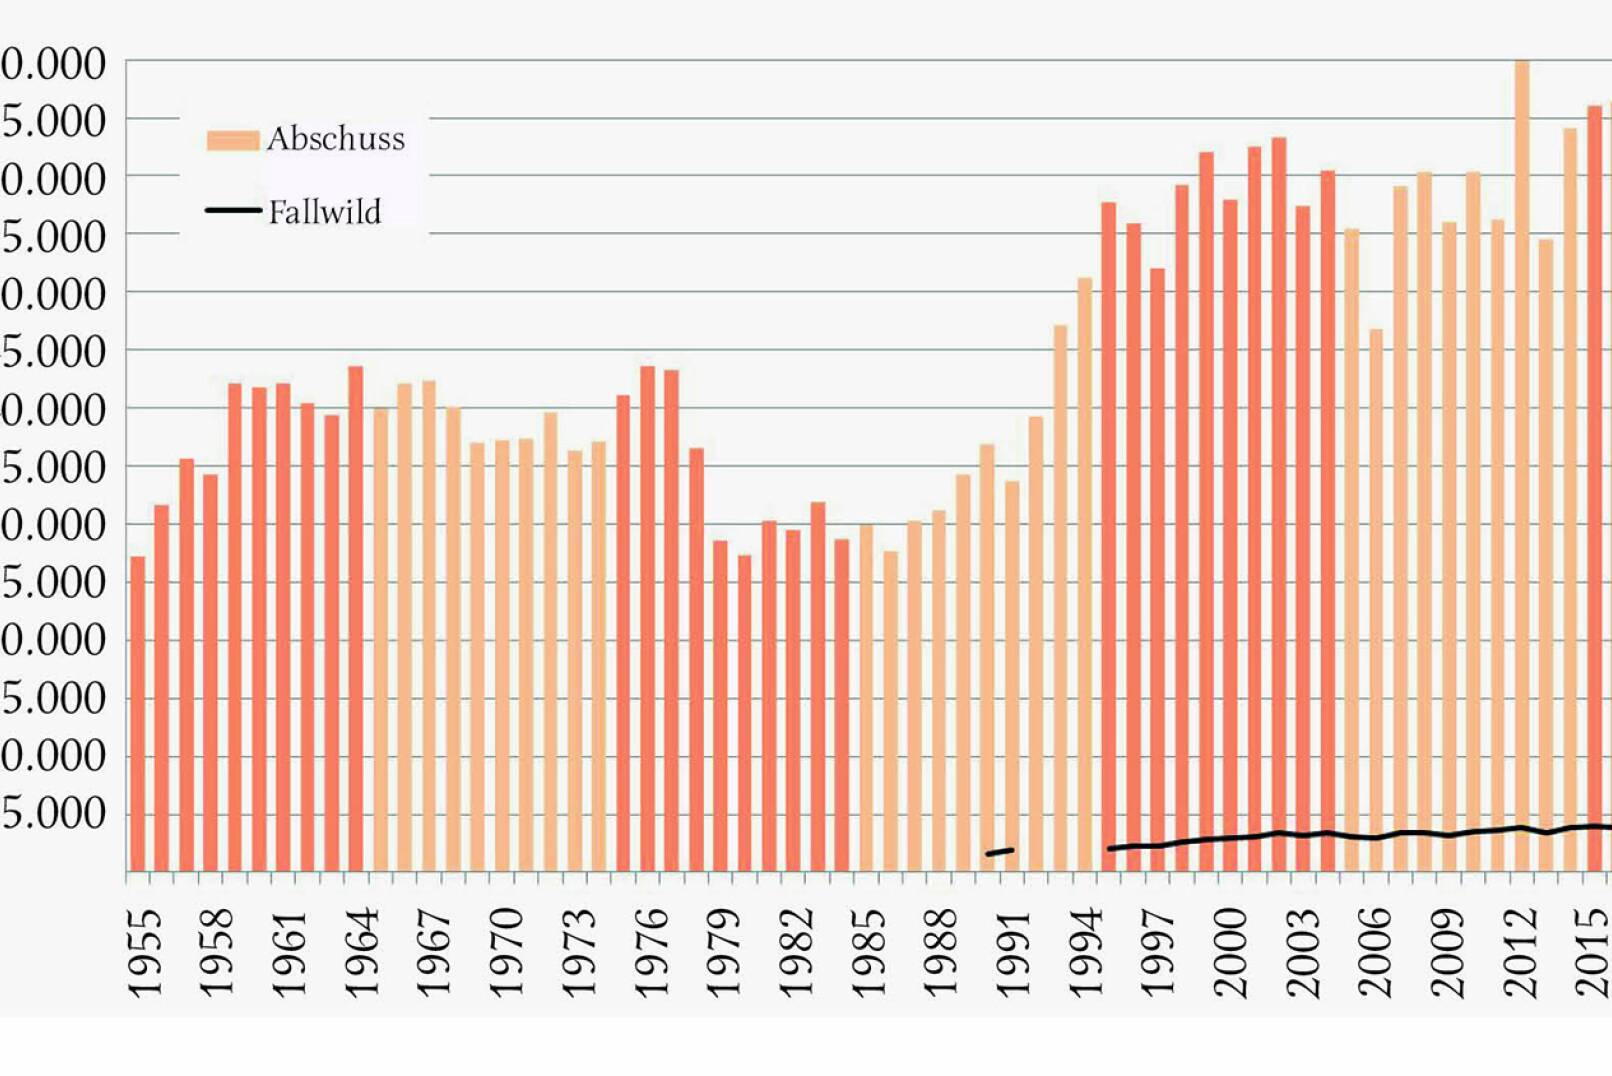 Abbildung 2 - Jährliche Fuchsstrecke in Österreich von 1955 bis 2018 (10-Jahres-Perioden farblich gekennzeichnet) sowie Fallwild von 1990 bis 2018.  - © Grafik Reimoser